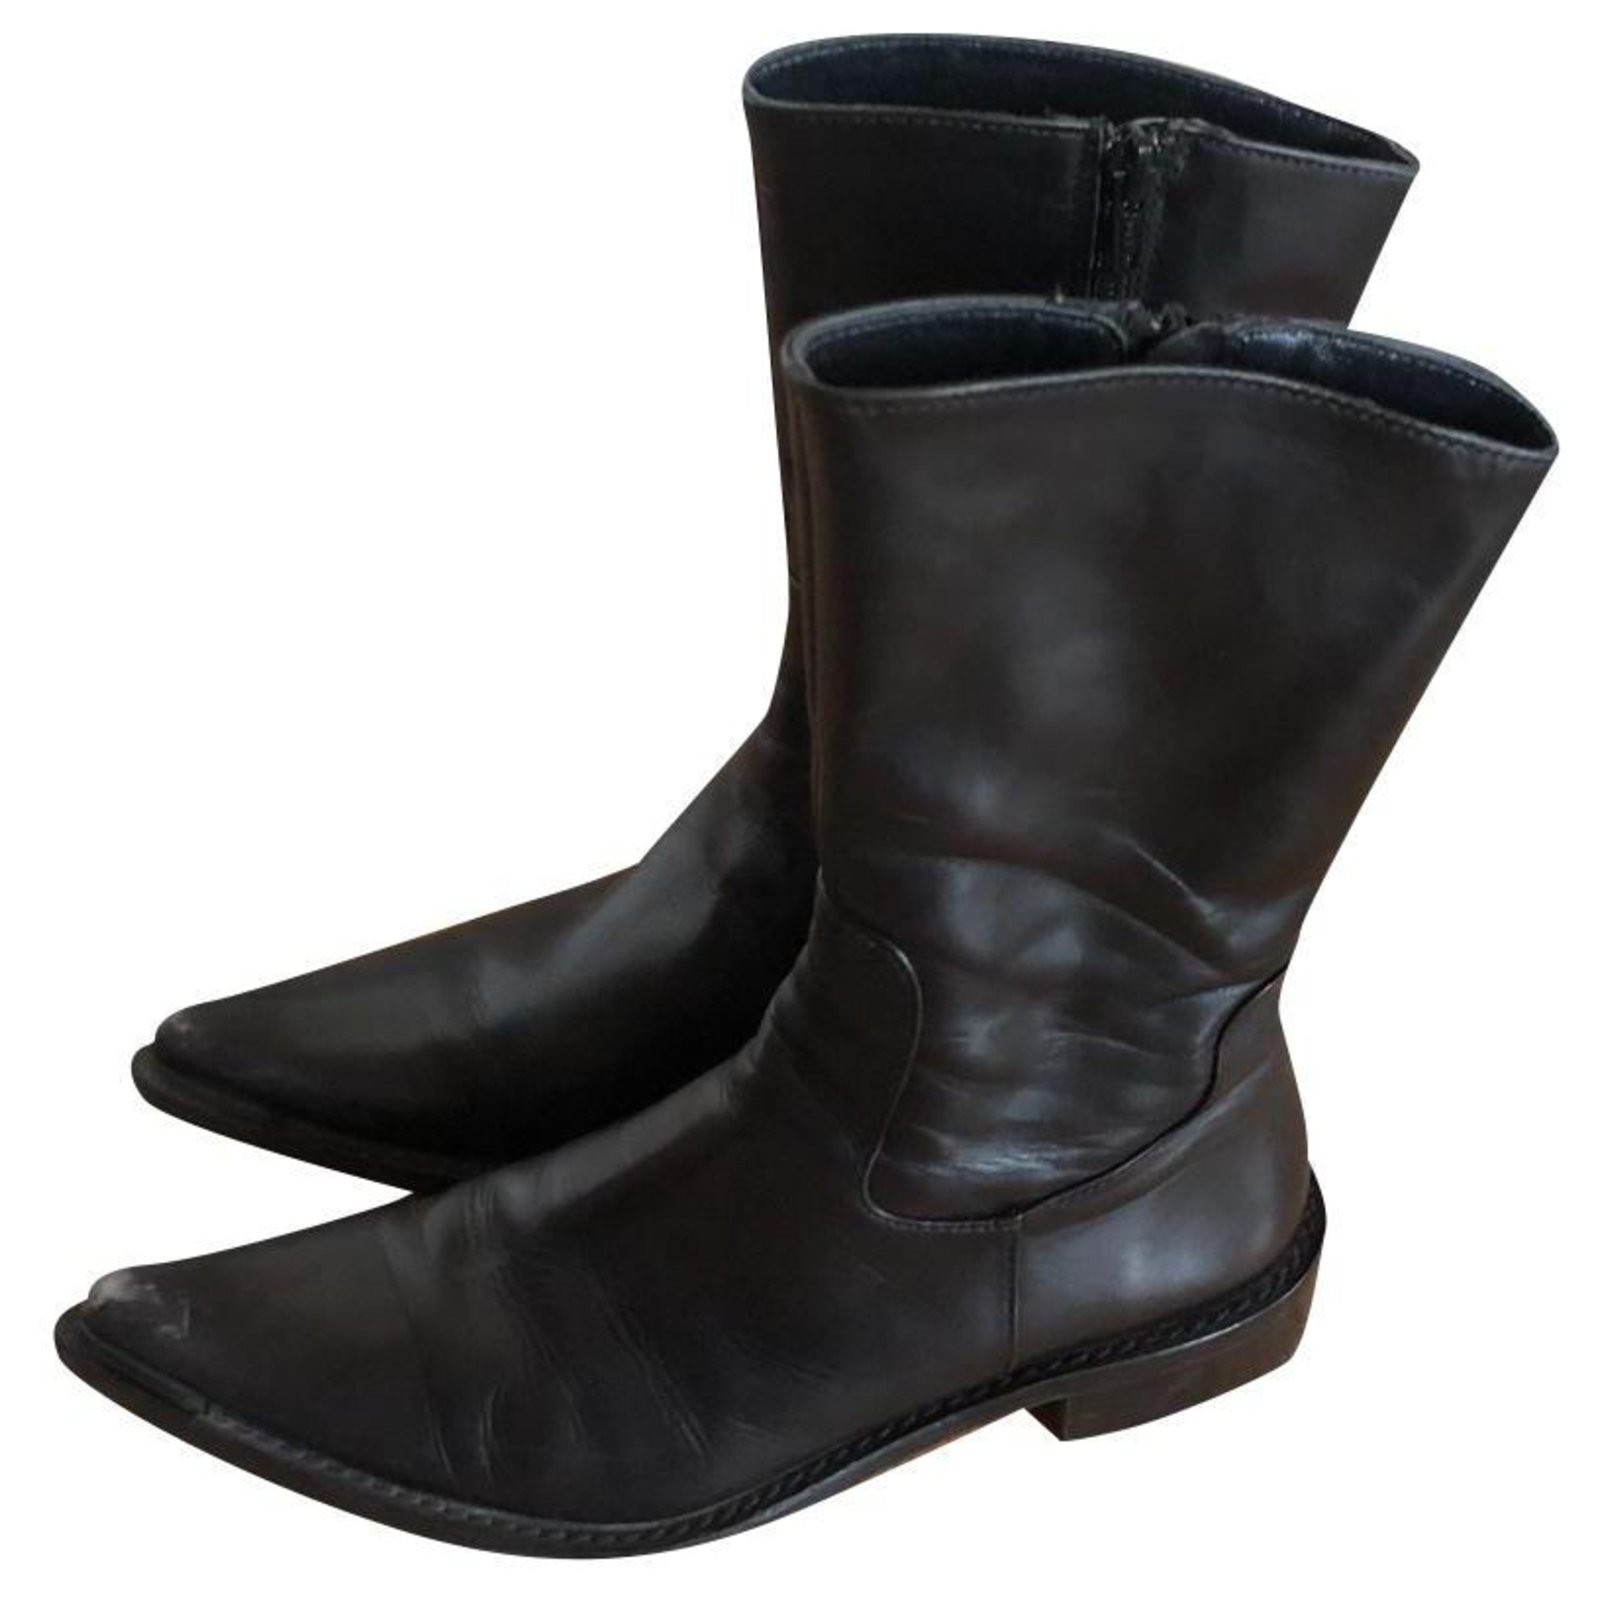 Vero Cuoio Boots Black Leather - Joli